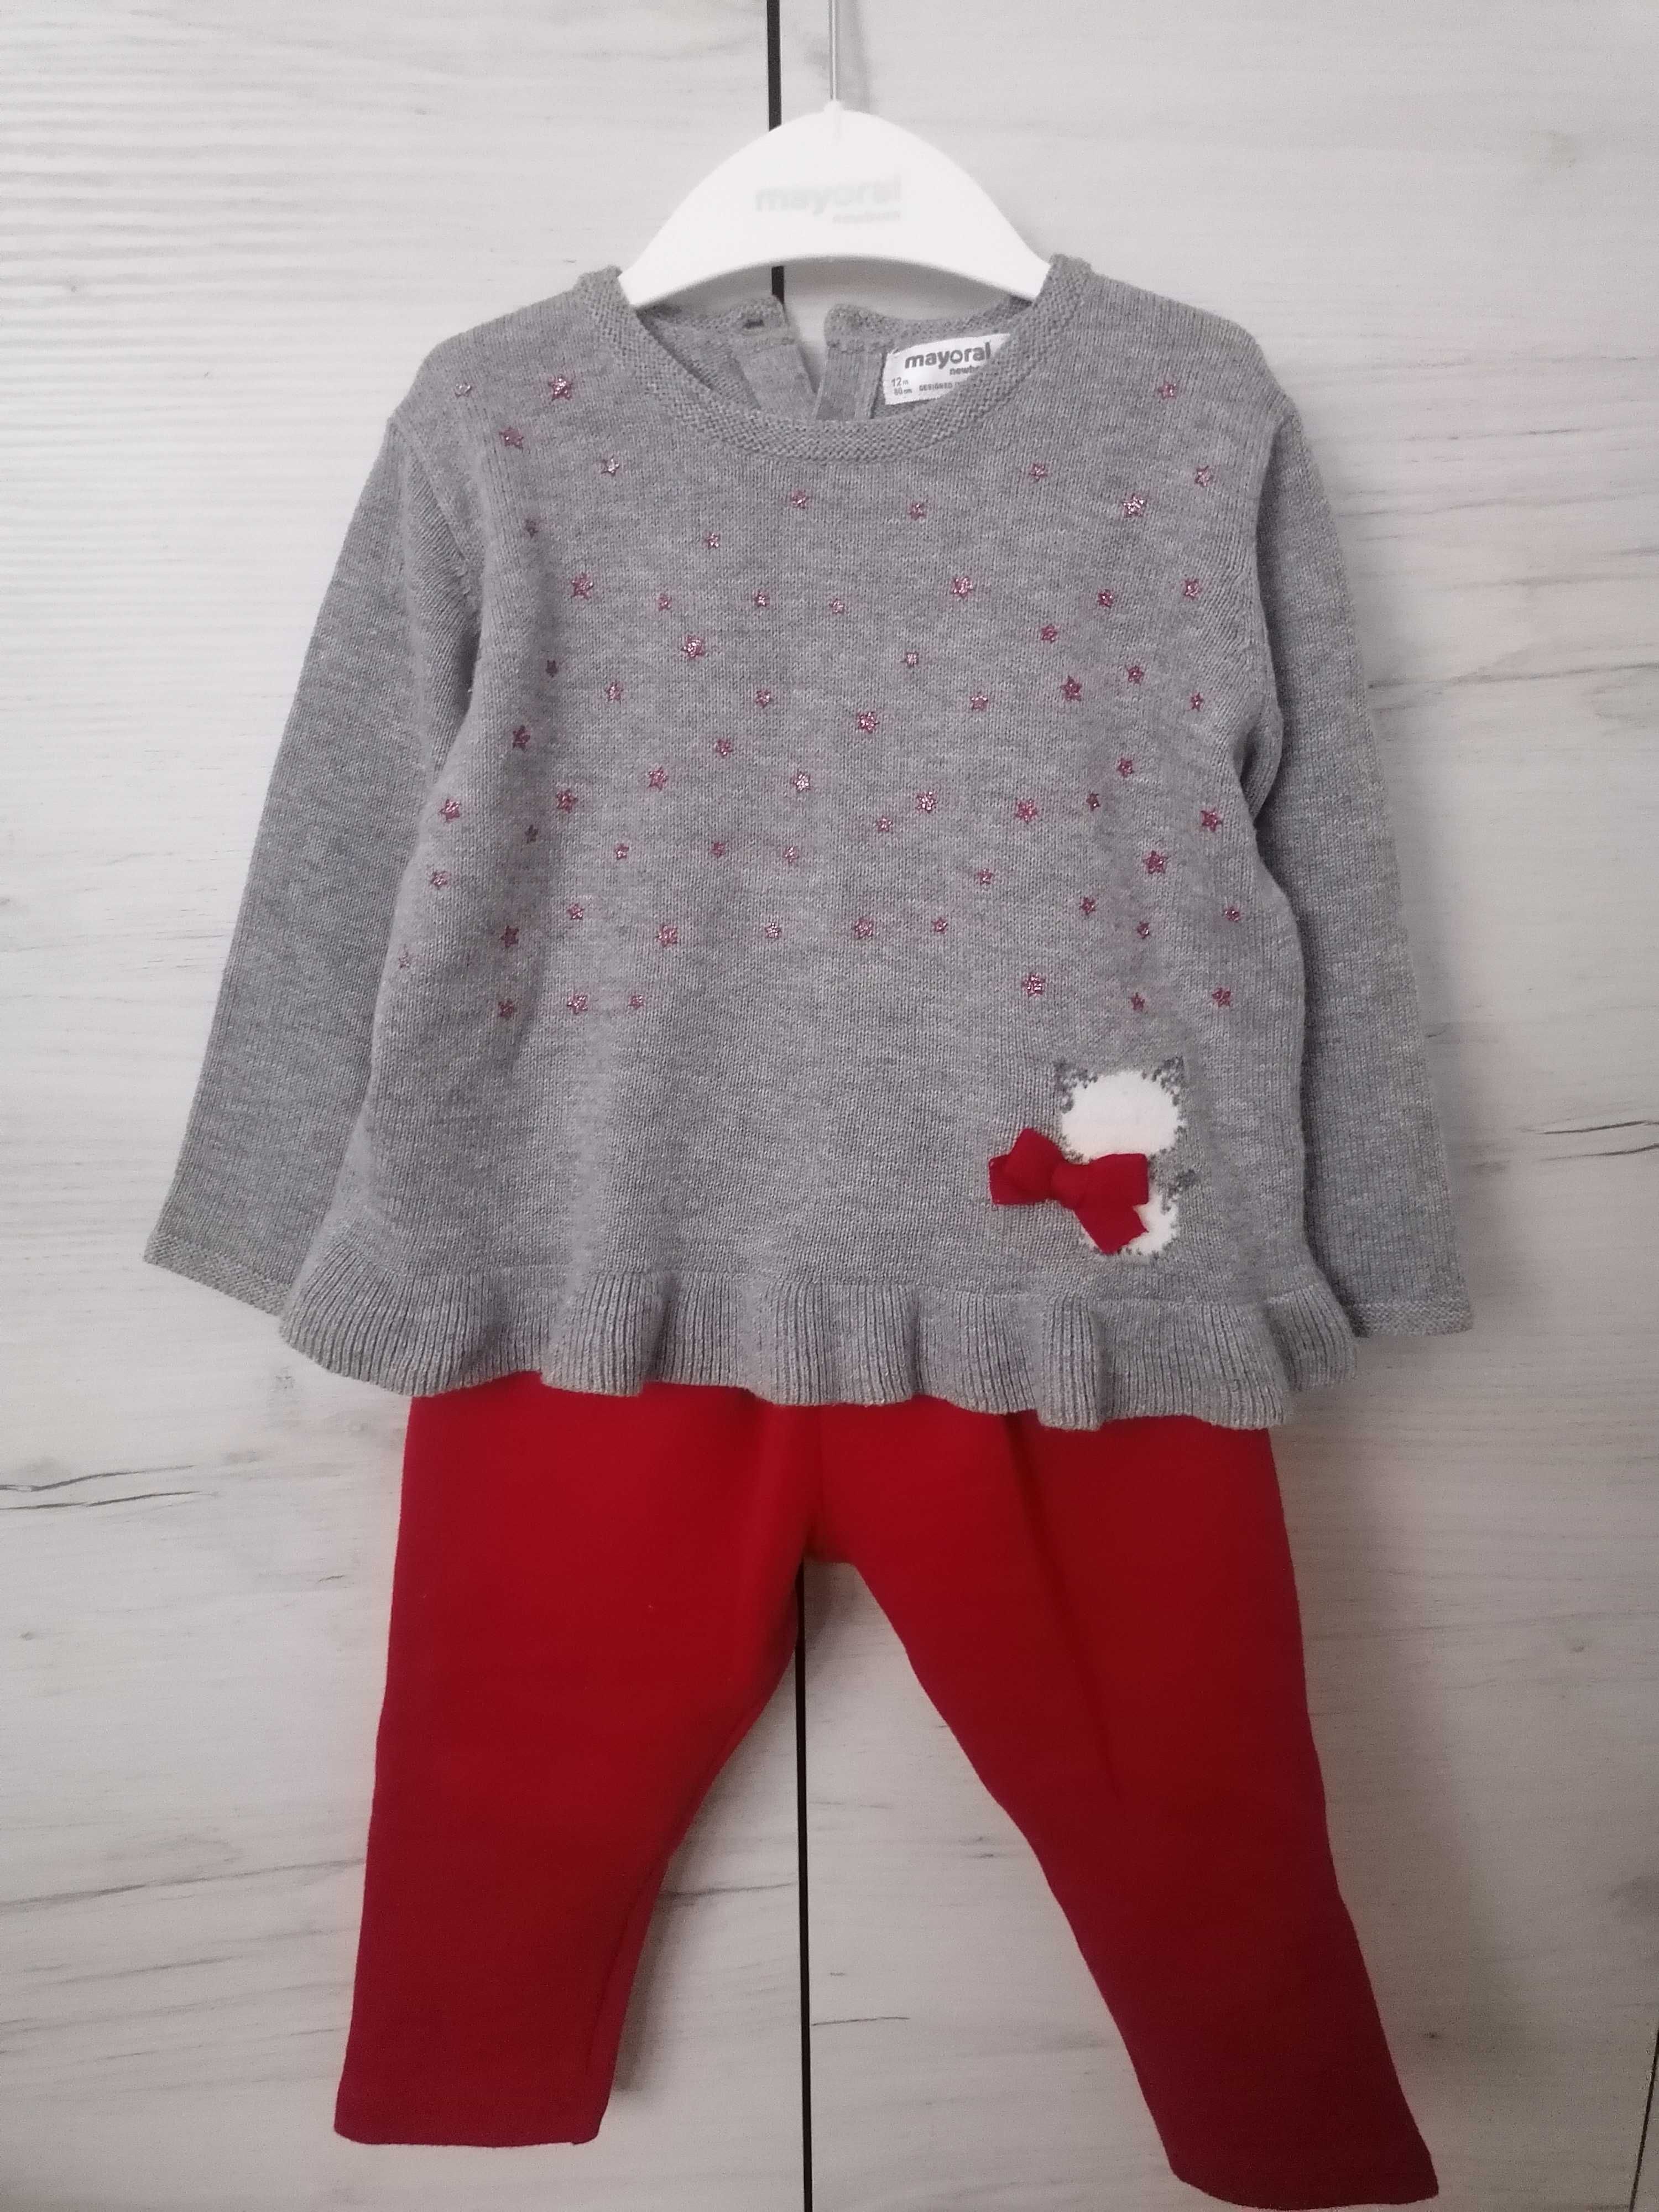 Komplet Mayoral sweterek + spodnie dla dziewczynki rozmiar 80